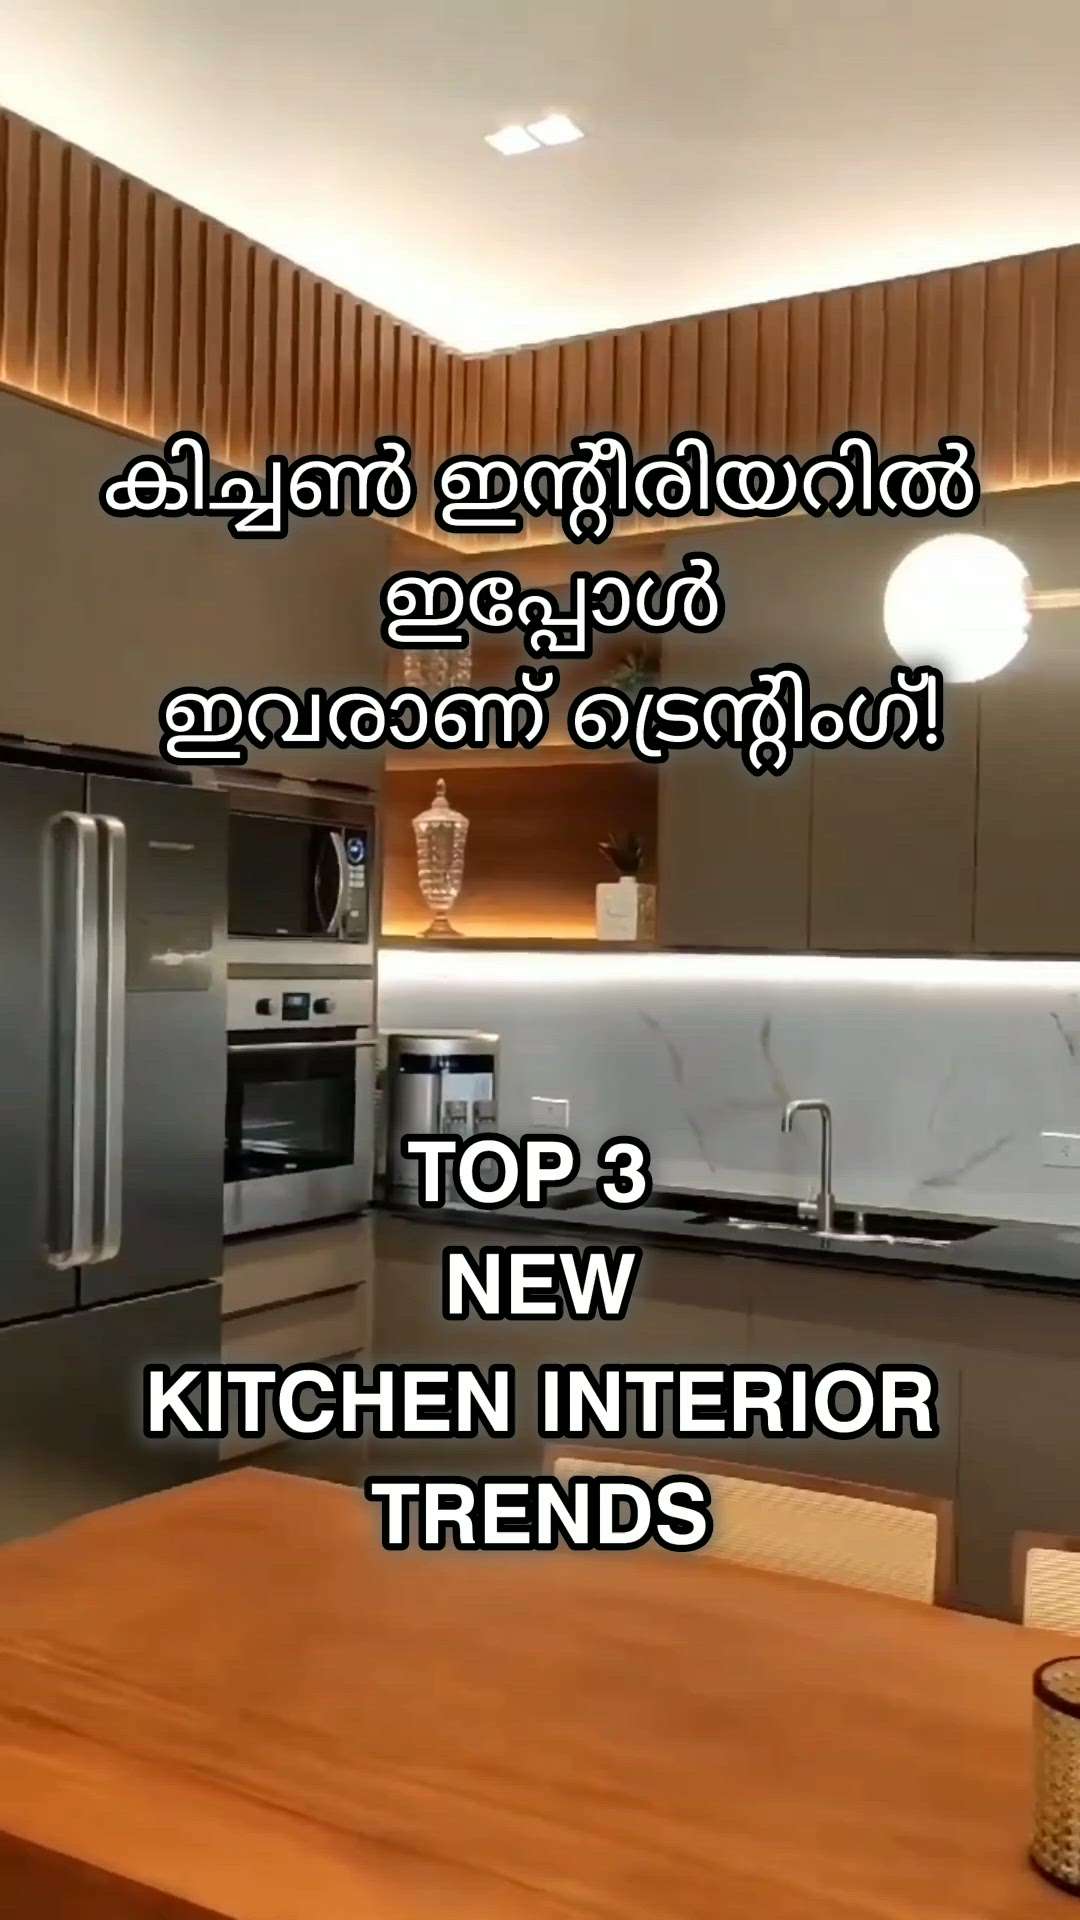 top 3 new kitchen interior trends

 #Creatorsofkolo #top3 #kitchenideas #modernhome #ideas #kitchen #KitchenInterior